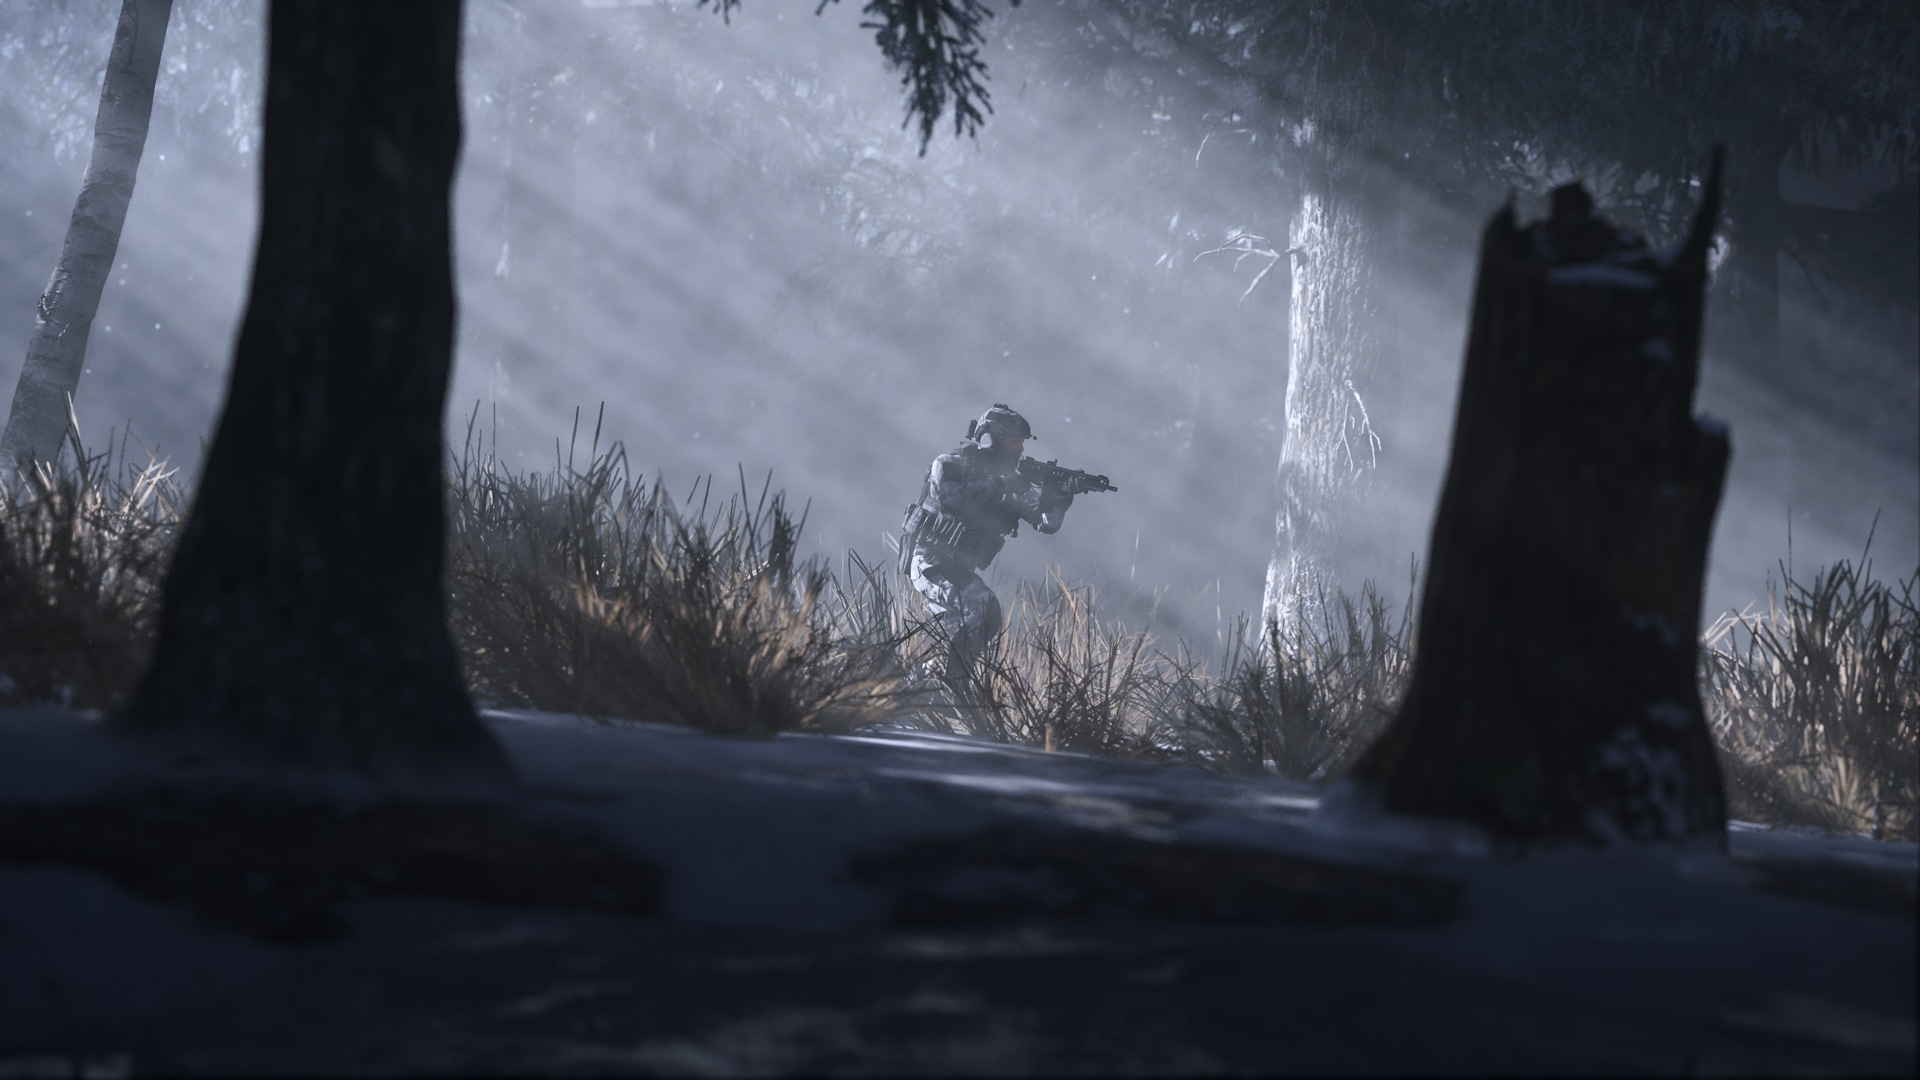 Le nouveau Call of Duty Modern Warfare 3 est disponible en précommande